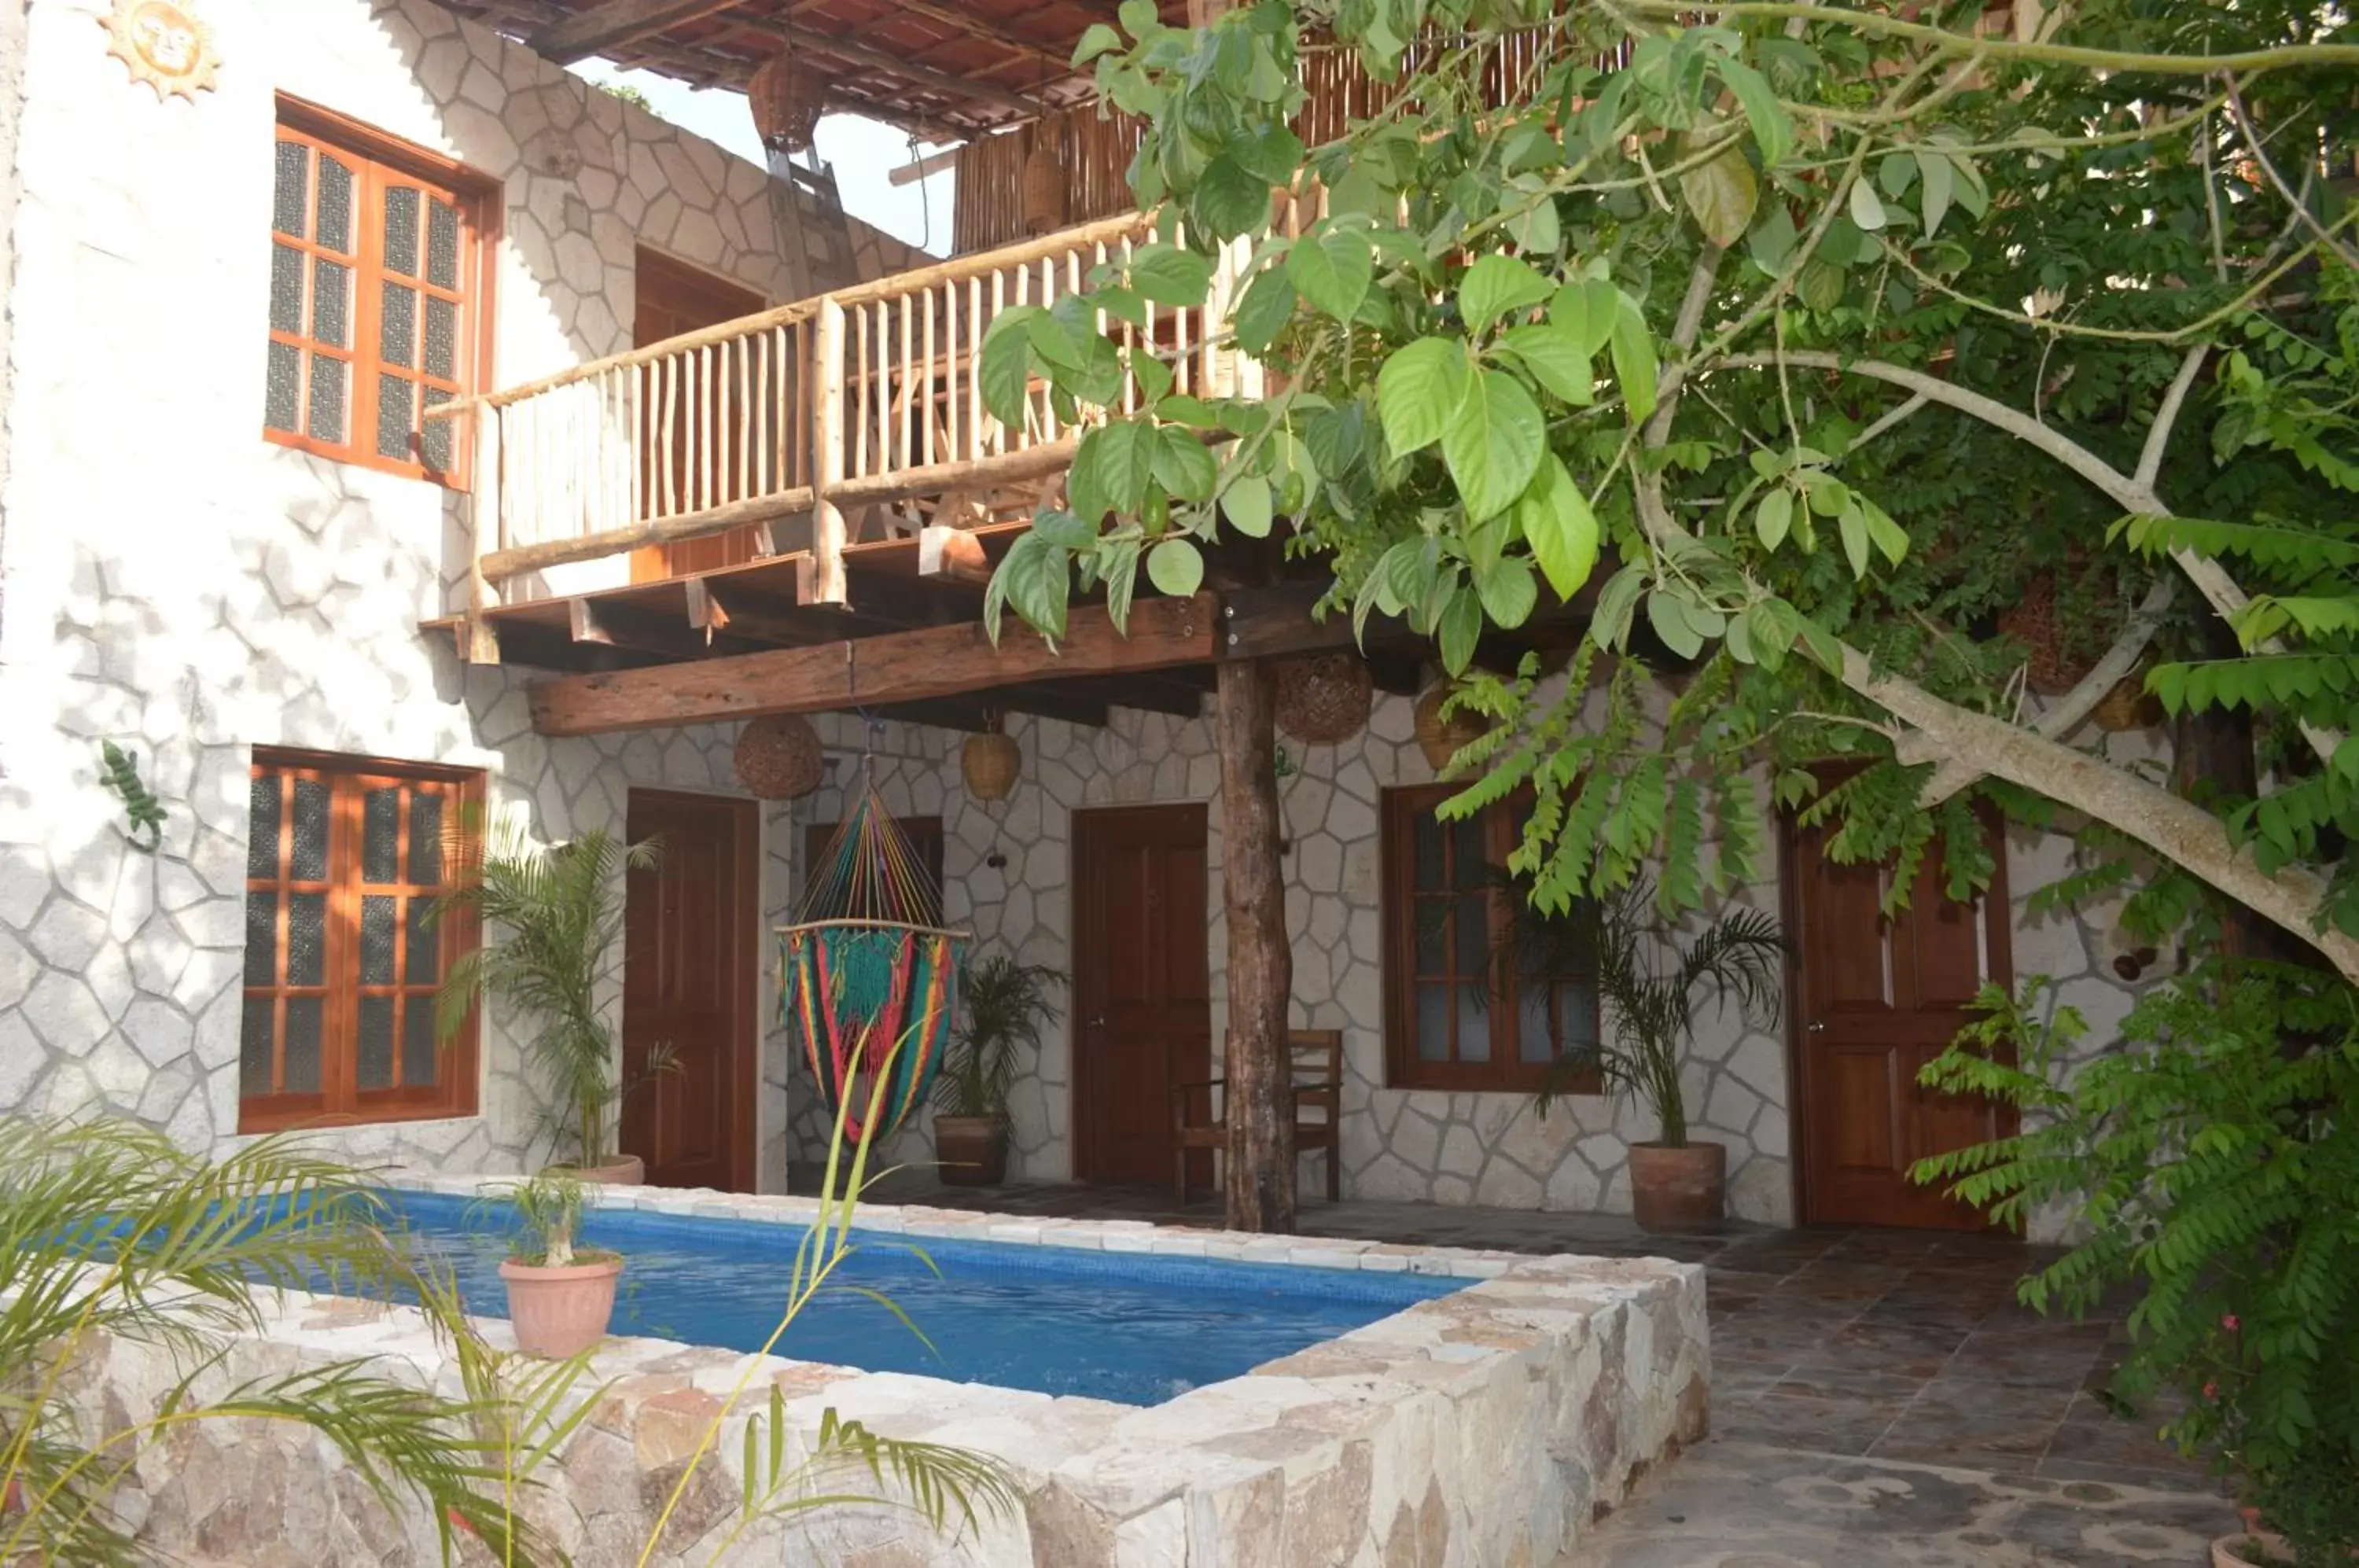 Property building, Swimming Pool in Casa San Juan